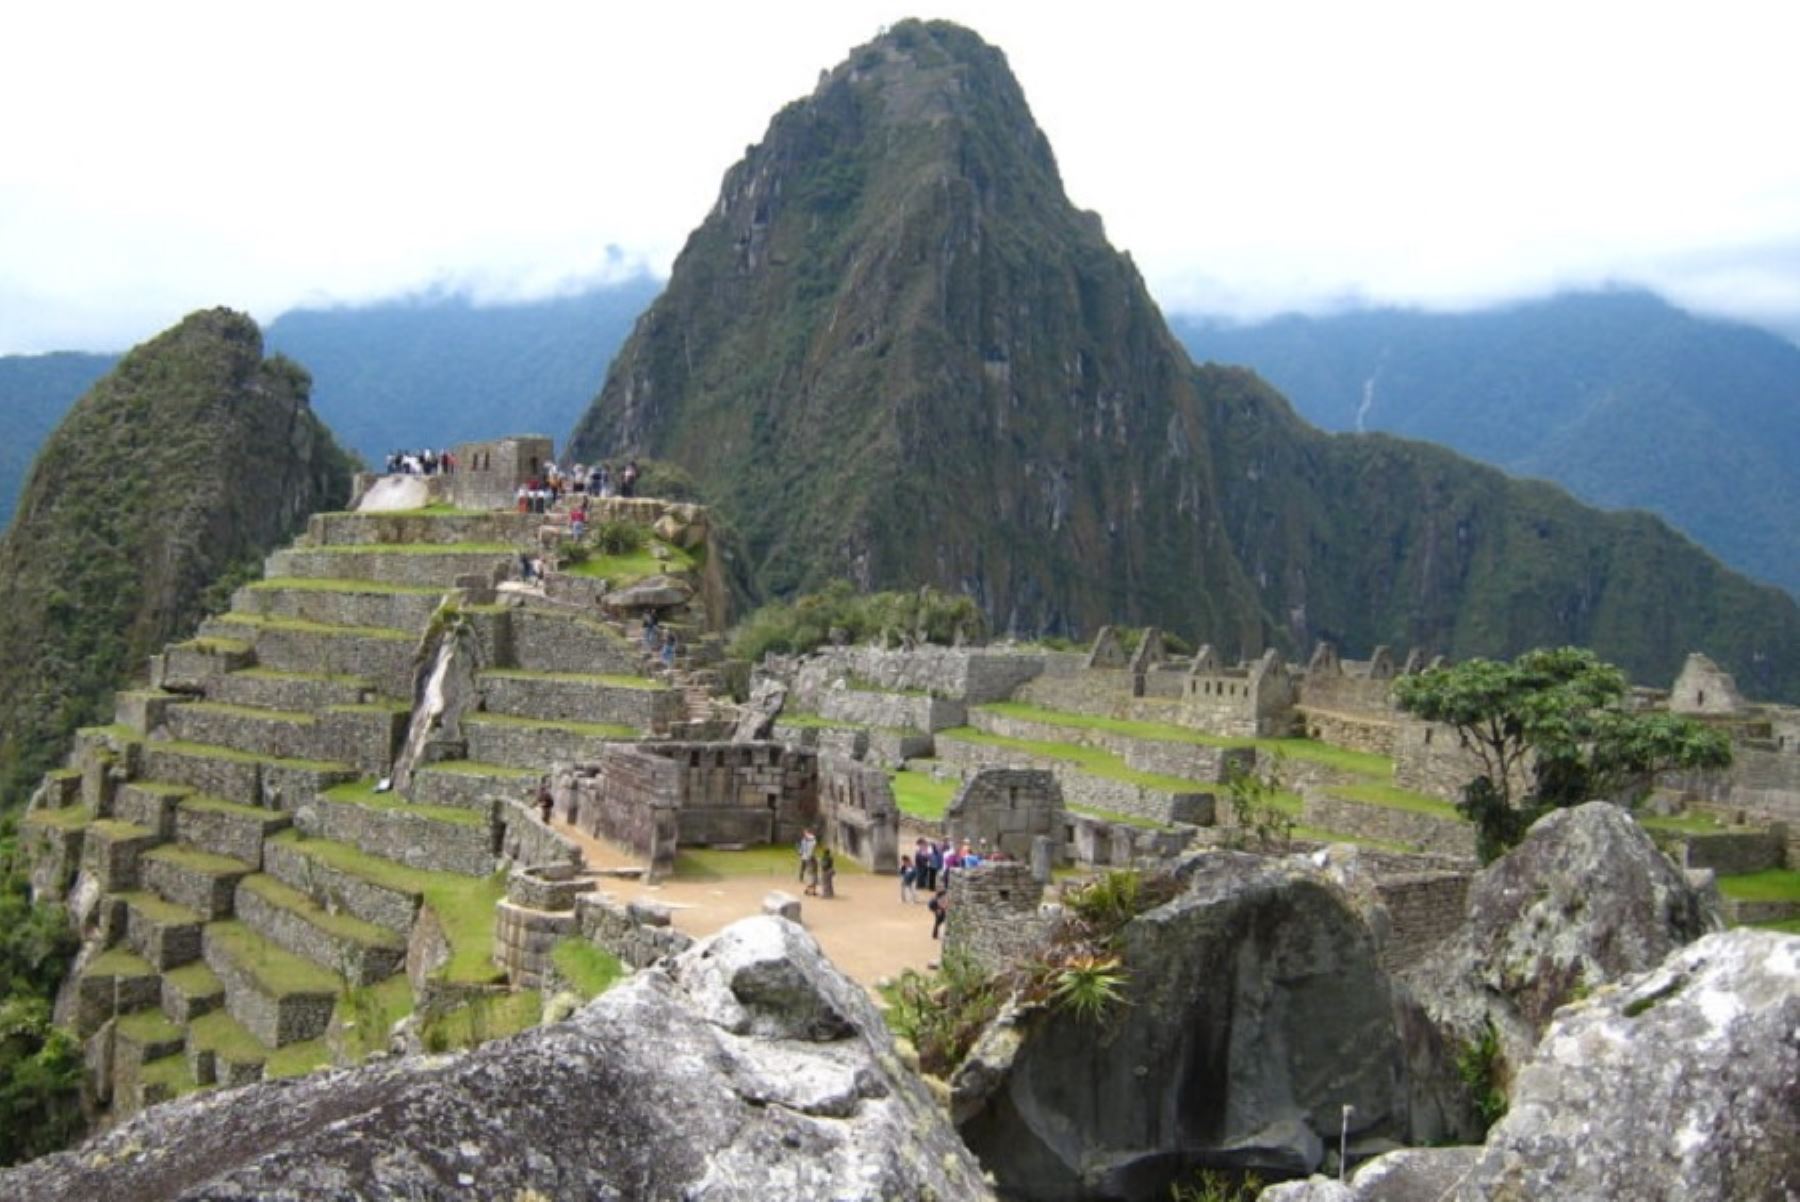 Este viernes 7 de julio, el Santuario Histórico y Parque Arqueológico de Machu Picchu, principal atractivo turístico del Perú y distinguido como Patrimonio de la Humanidad por la Unesco, celebrará el XVI aniversario de su elección como una de las siete nuevas maravillas del mundo moderno.